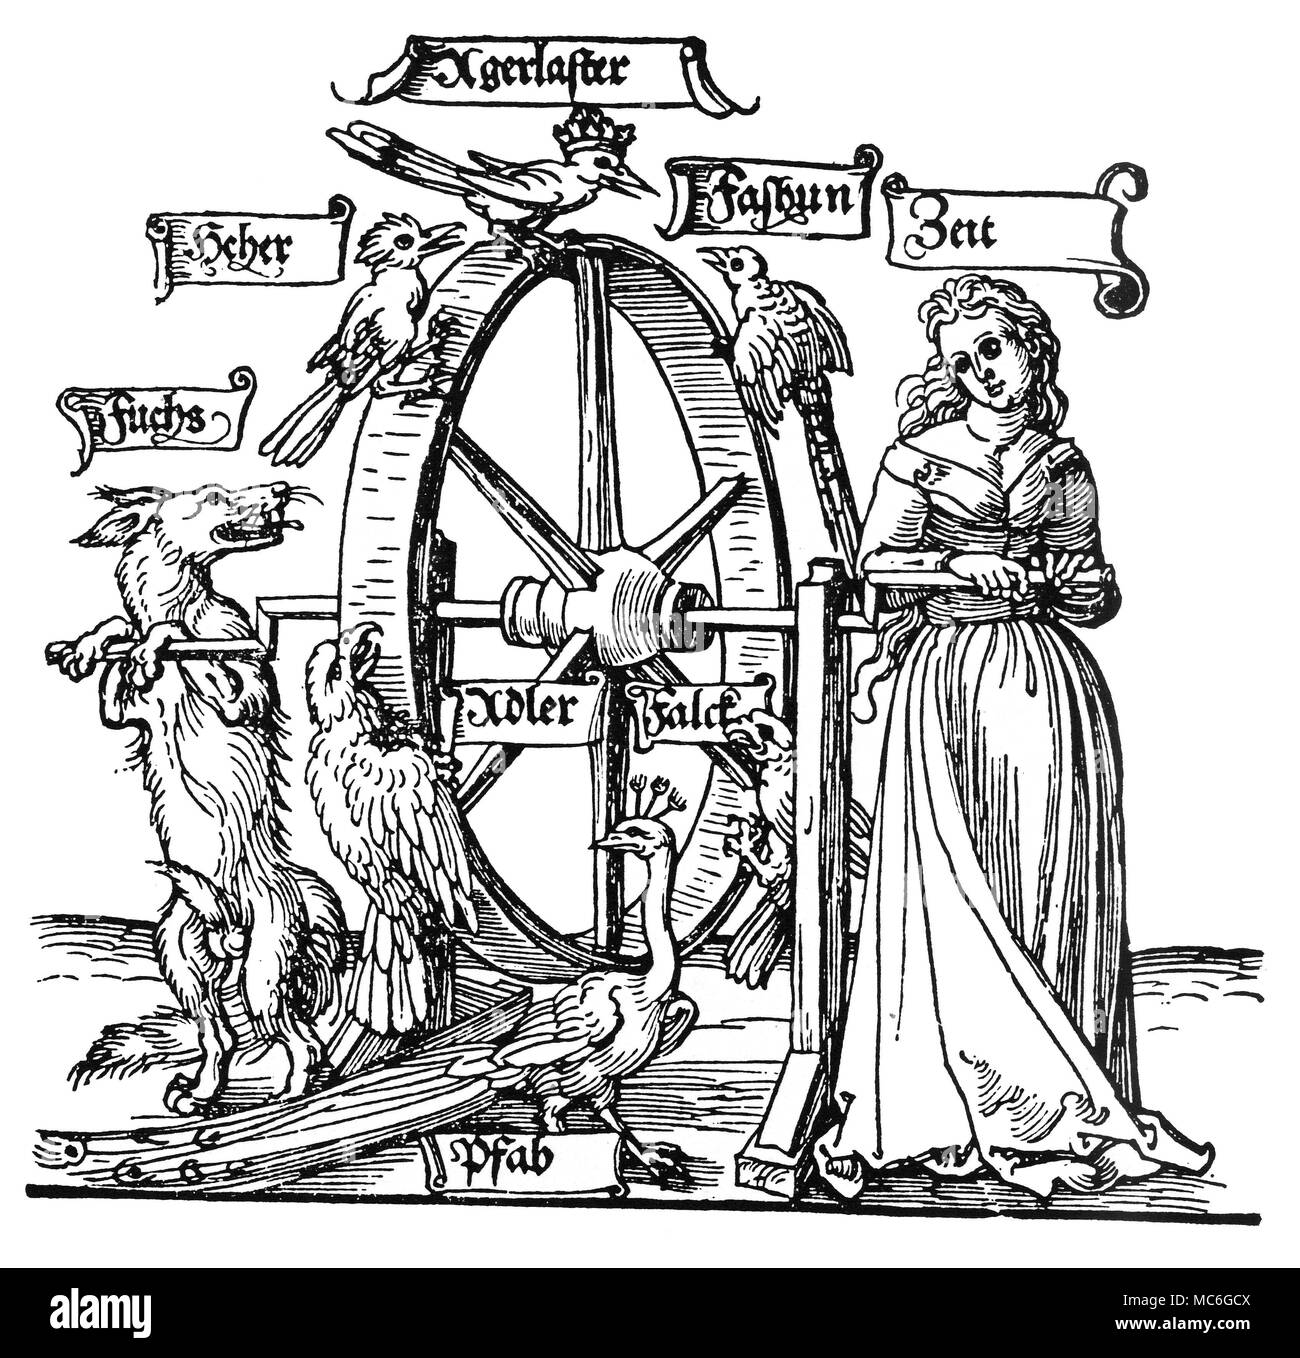 Glücksrad Detail einer Glücksrad, sagte (1524), Kopien eines Design auf einem alten Wandteppich in das Schloss am Michelfeldt gefunden (am Rhein). Dieses Detail zeigt Zeit (Zeit markiert) drehen das Rad des Vermögens, unterstützt von einem Fuchs (Fuchs). Die genannten Vögel gehören (unten) ein Pfau, ein Falke, eine Elster, ein Fasan und ein Adler. Die Bedeutung dieser Zyklus von Vögeln ist nicht bekannt, aber es kann sein, dass Sie zu heraldischen Geräte beziehen, und somit eine persönliche Bedeutung haben. Der Druck ist manchmal zu Unrecht den deutschen Künstler, Albrecht DÂ³rer zugeschrieben. Stockfoto